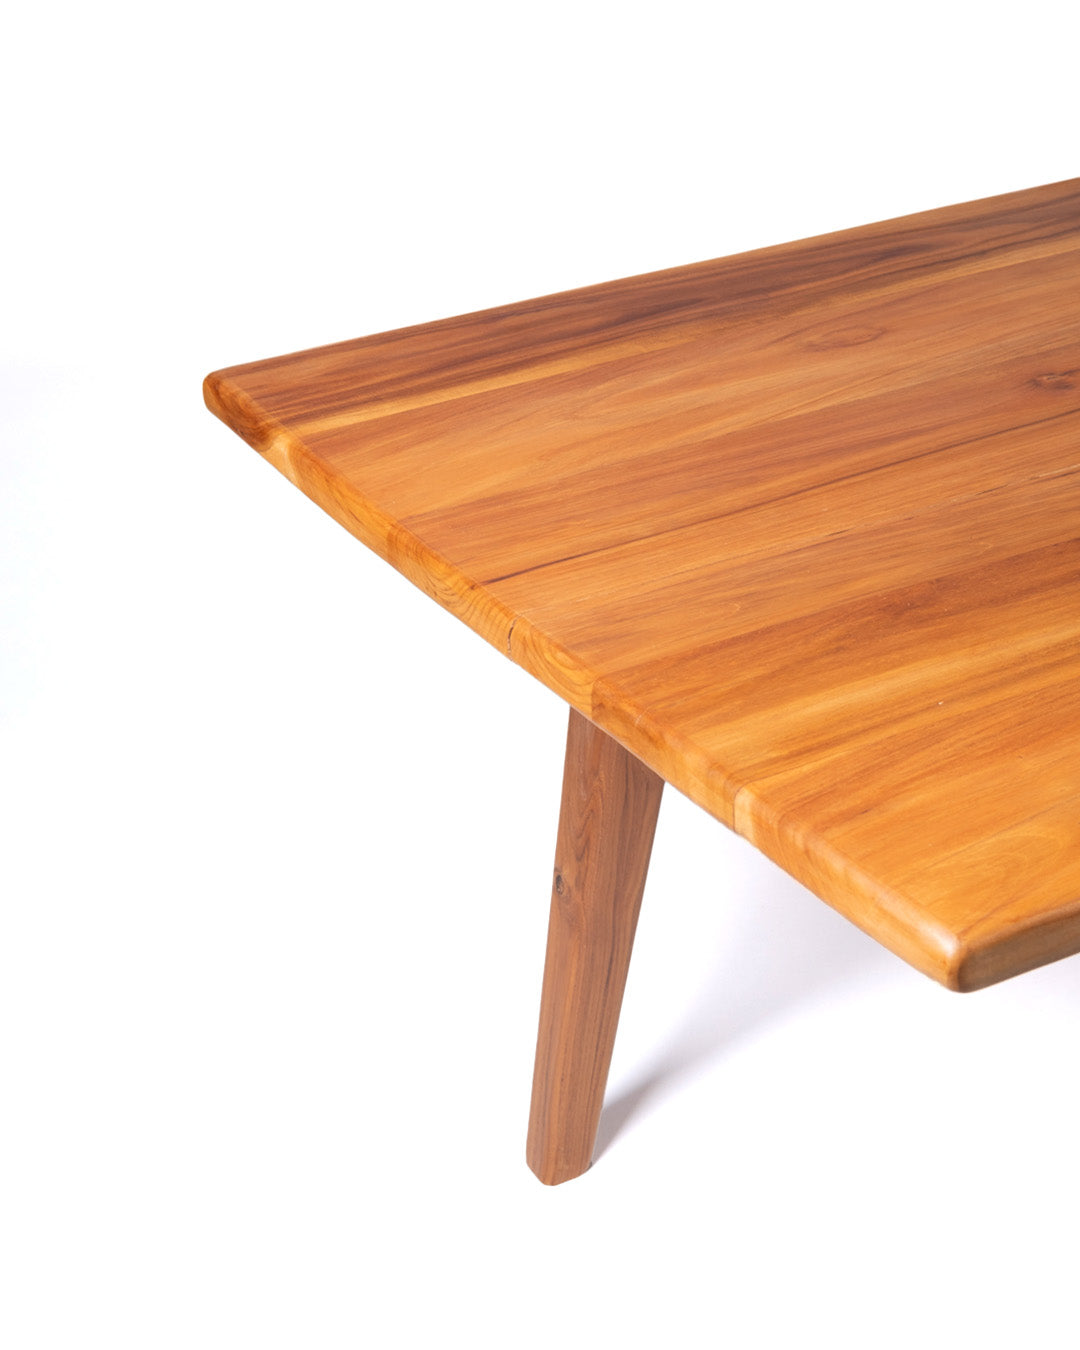 Mesa de comedor de madera maciza natural de teca Sedoa rectangular, hecha a mano con acabado natural, origen Indonesia